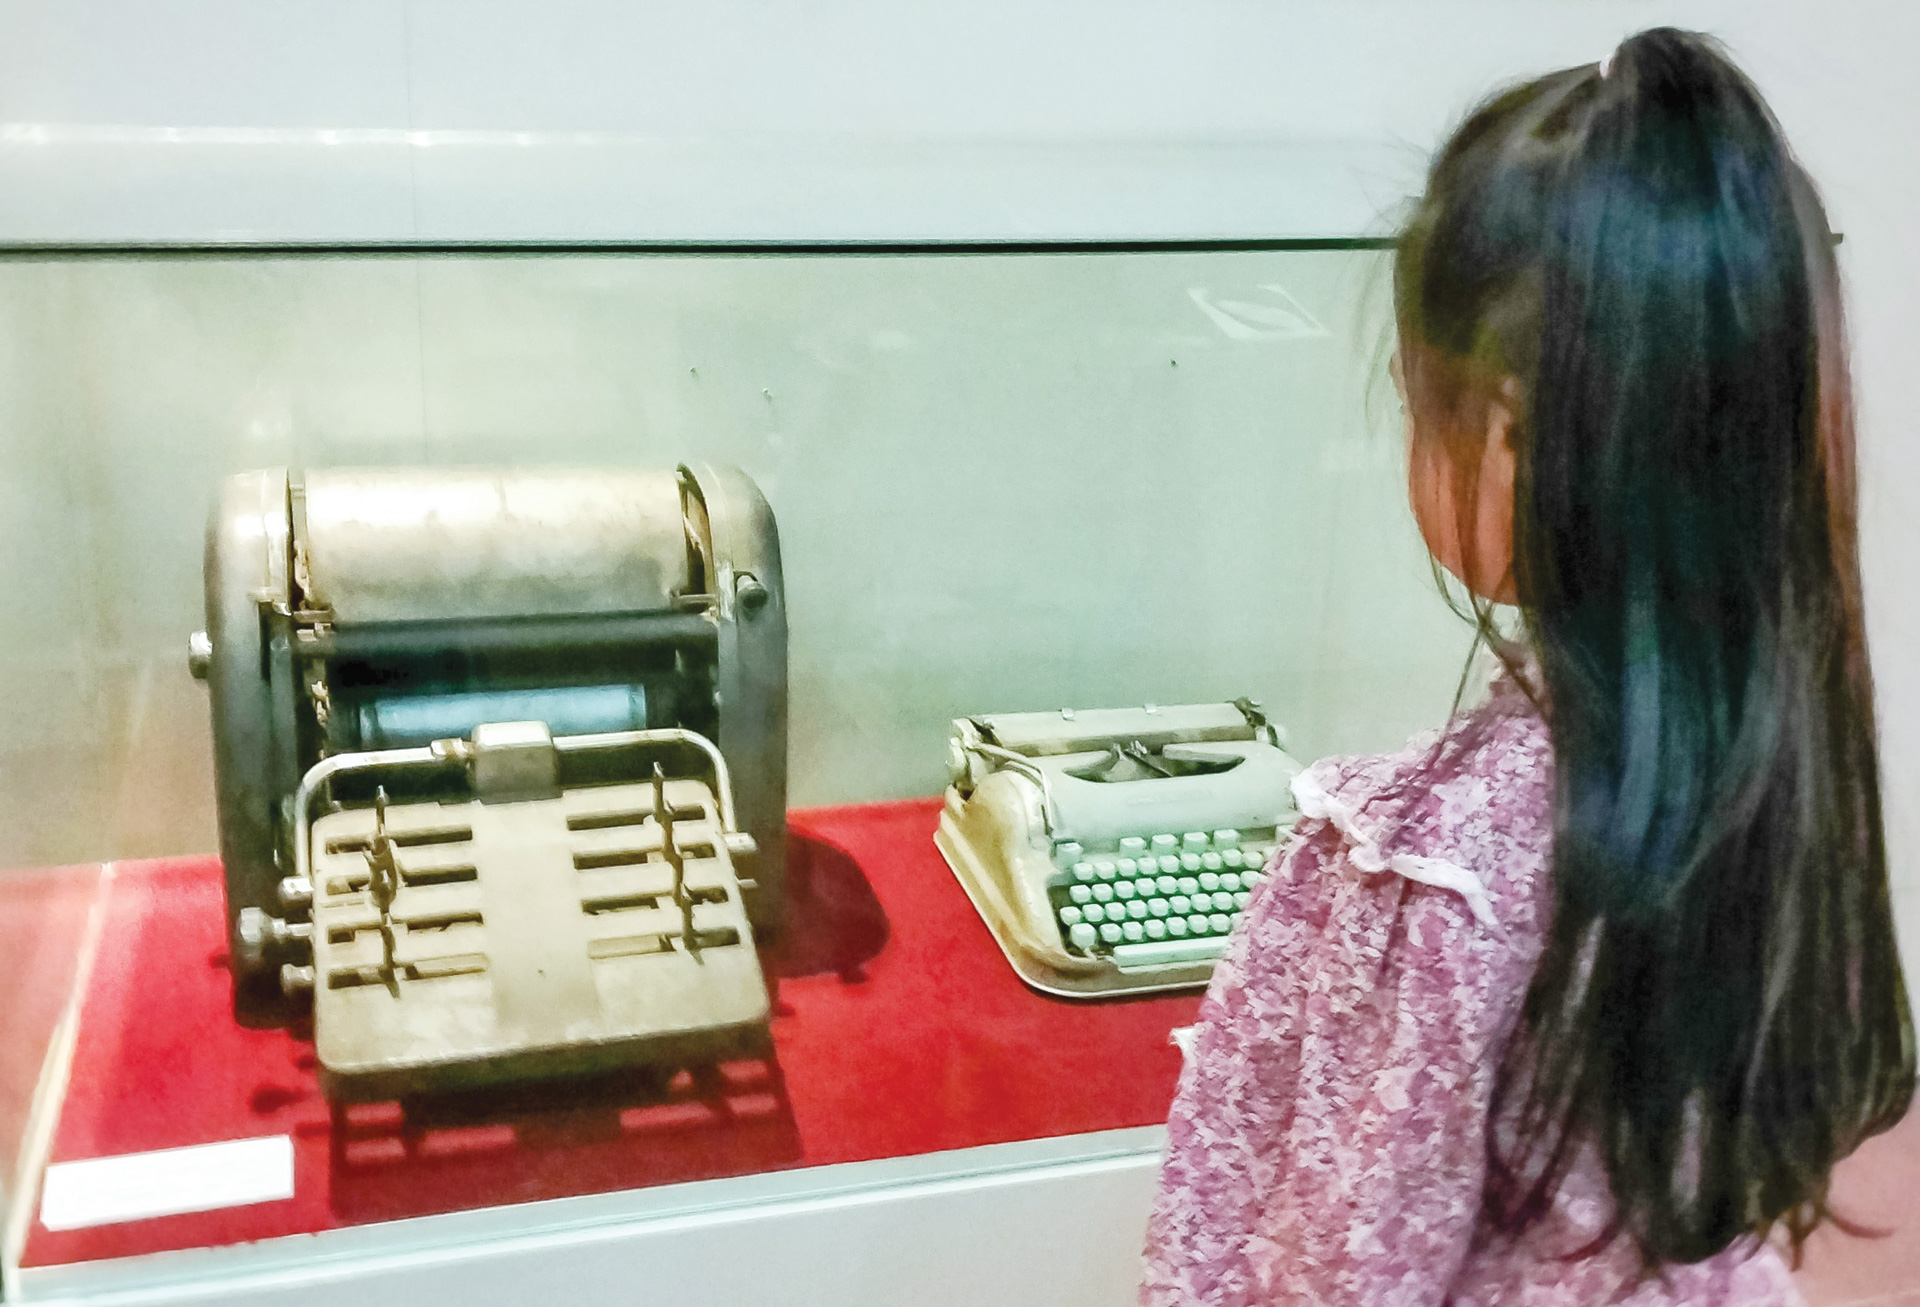 Học sinh Trường Tiểu học Đoàn Kết bên chiếc máy đánh chữ sử dụng để in truyền đơn chuẩn bị cho Ngày Giải phóng Đà Lạt đang được lưu giữ tại Bảo tàng Lâm Đồng